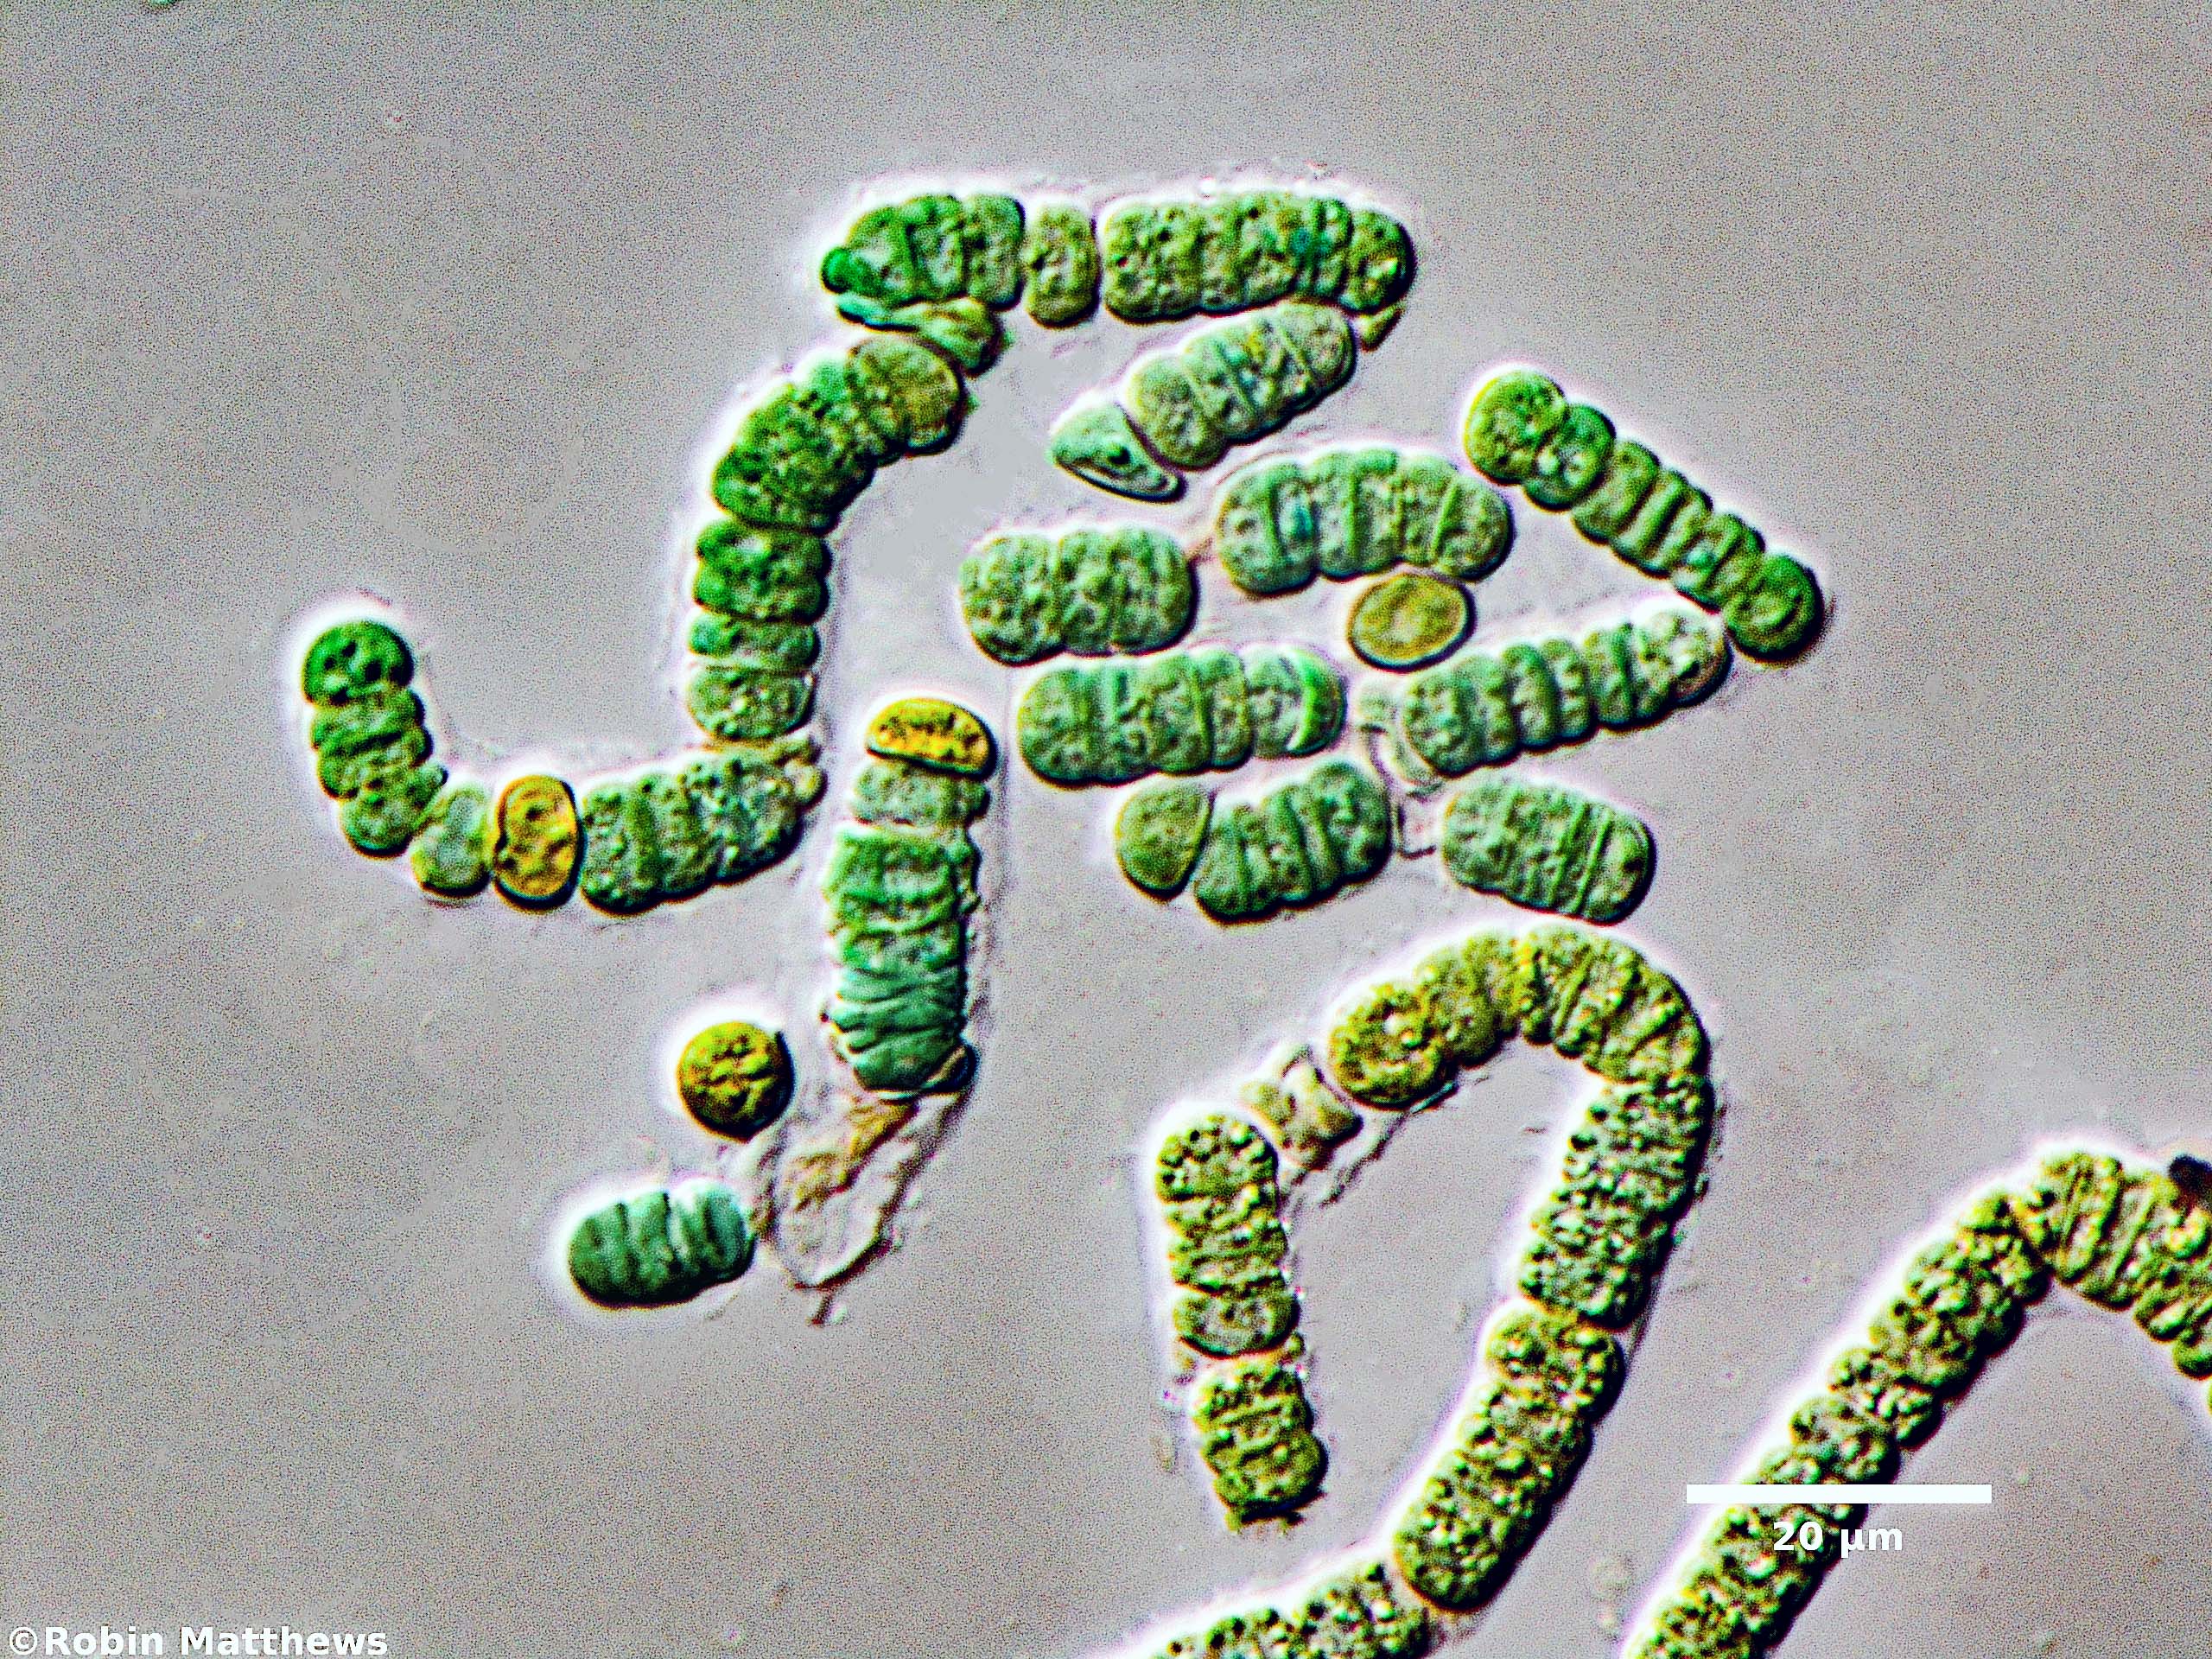 ././././Cyanobacteria/Nostocales/Aphanizomenonaceae/Nodularia/sp/nodularia-586.jpg